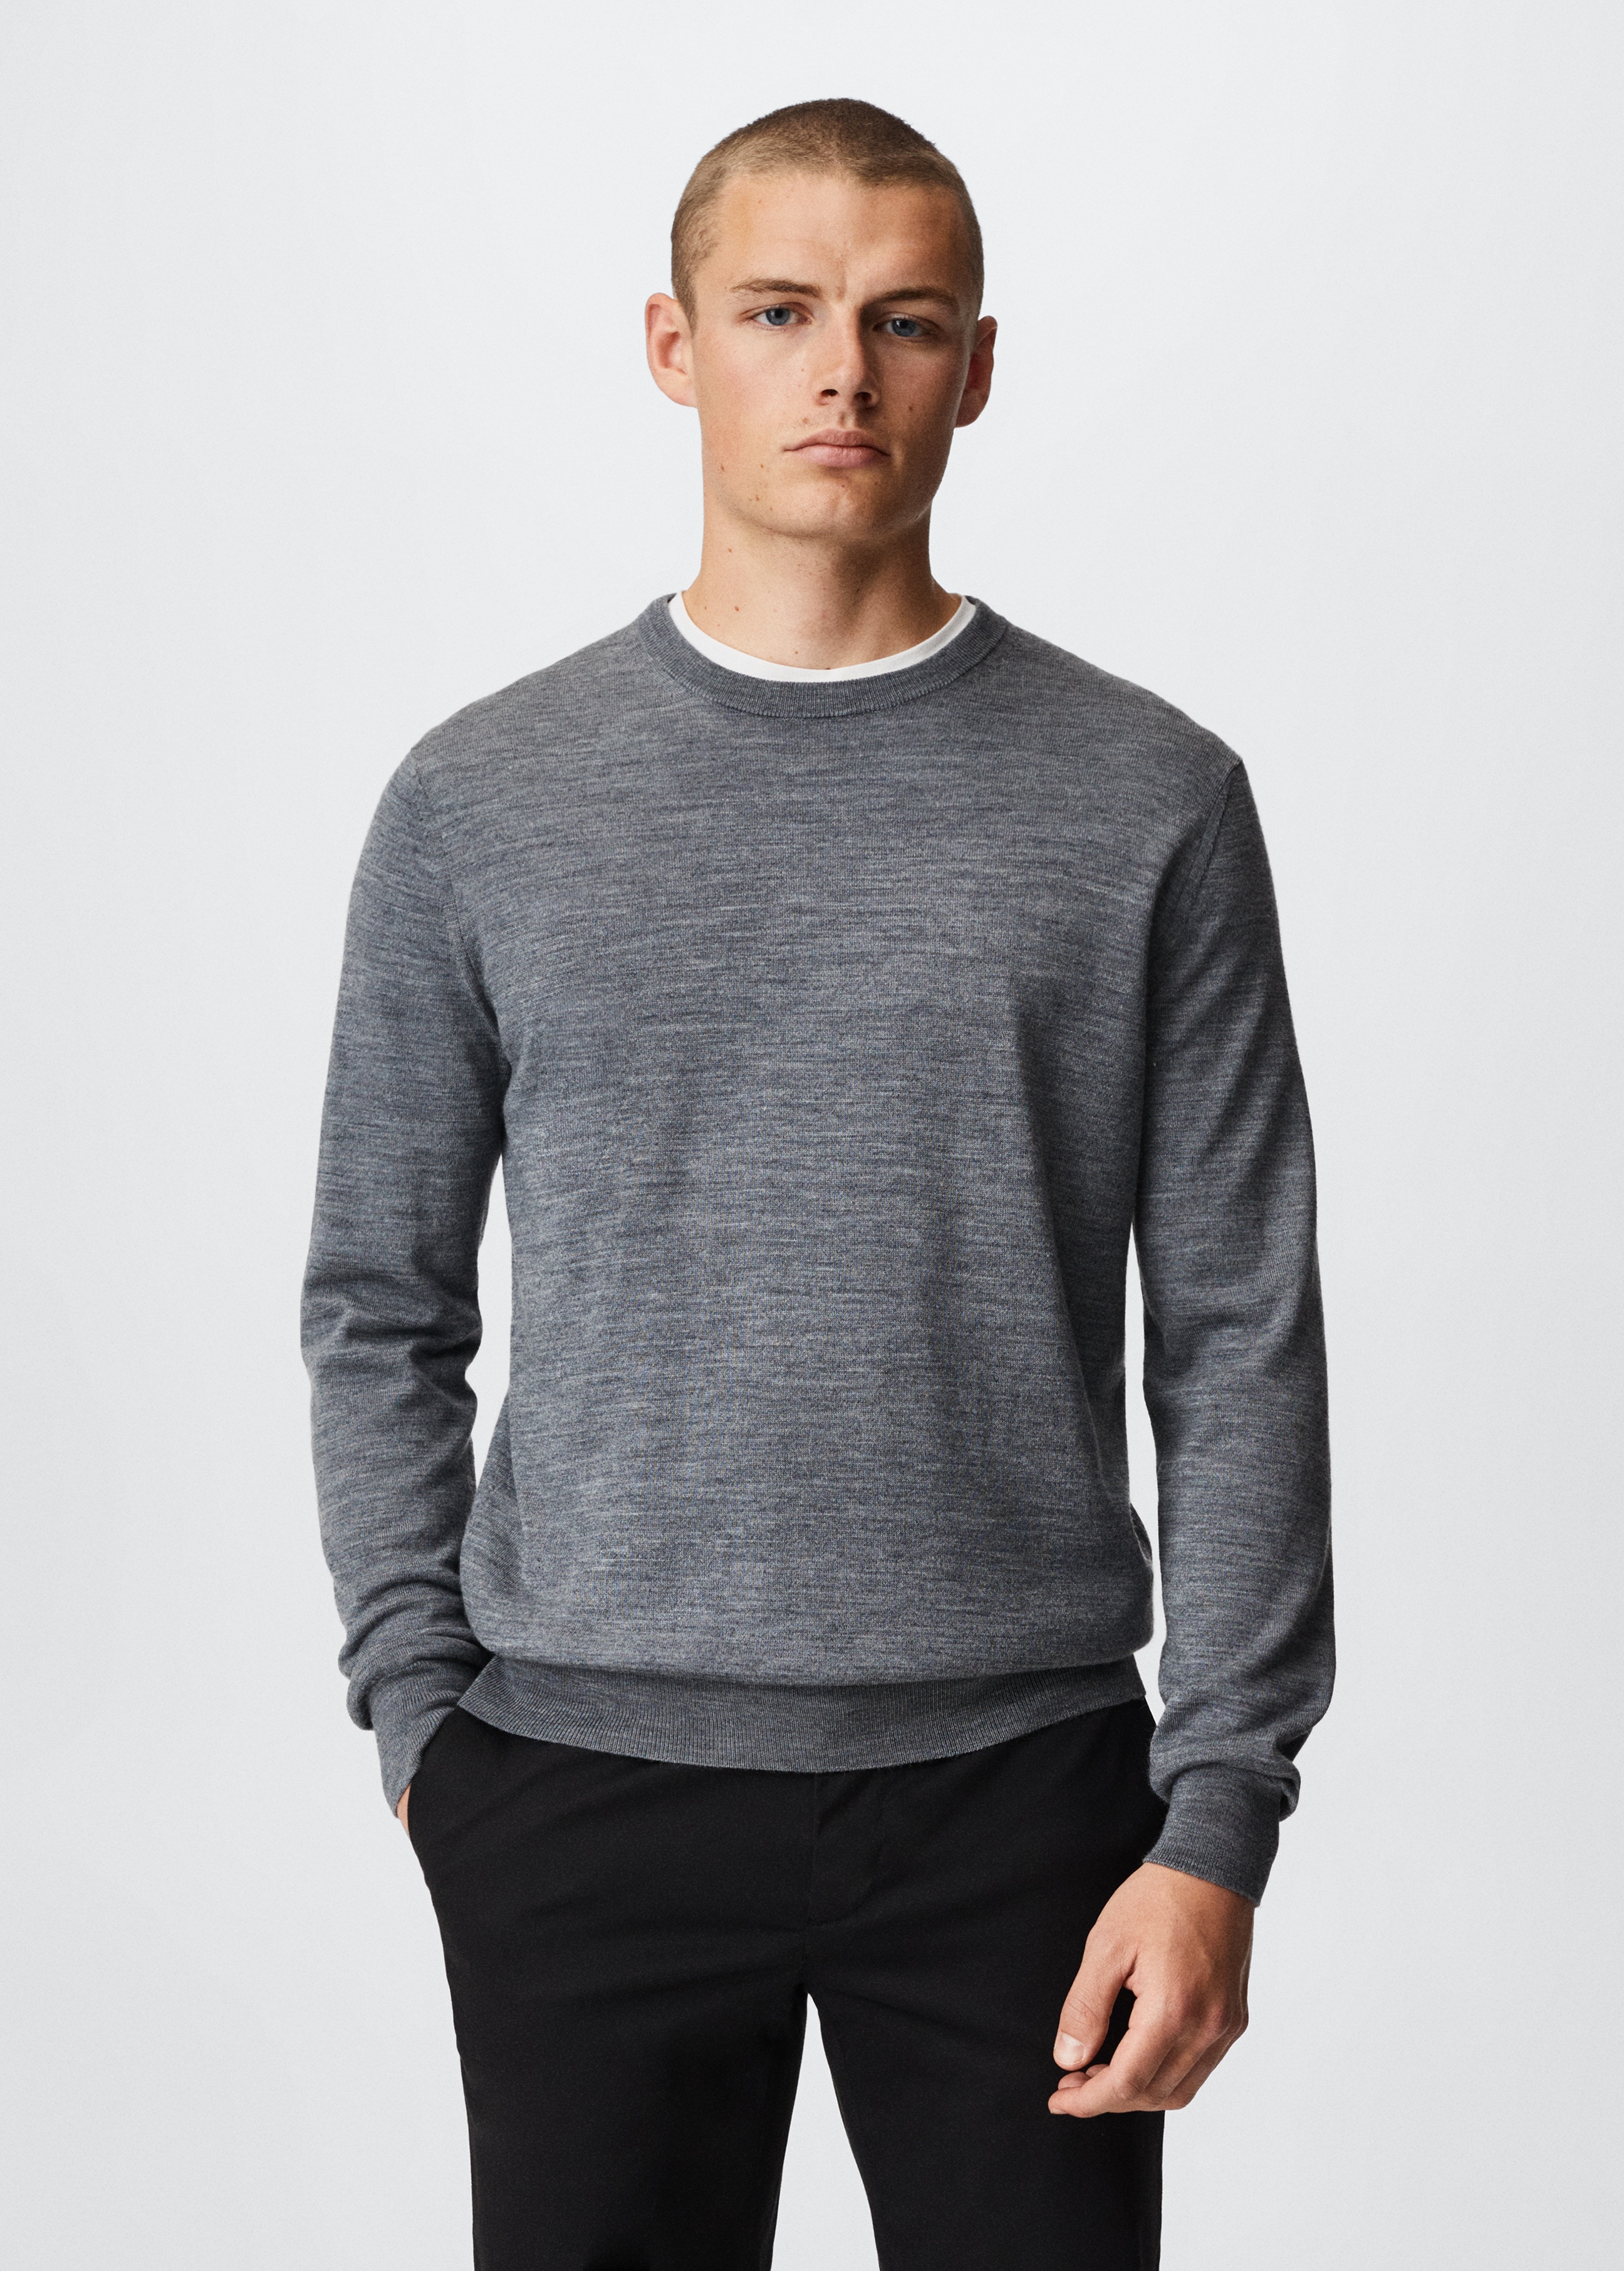 Merino wool washable sweater - Medium plane